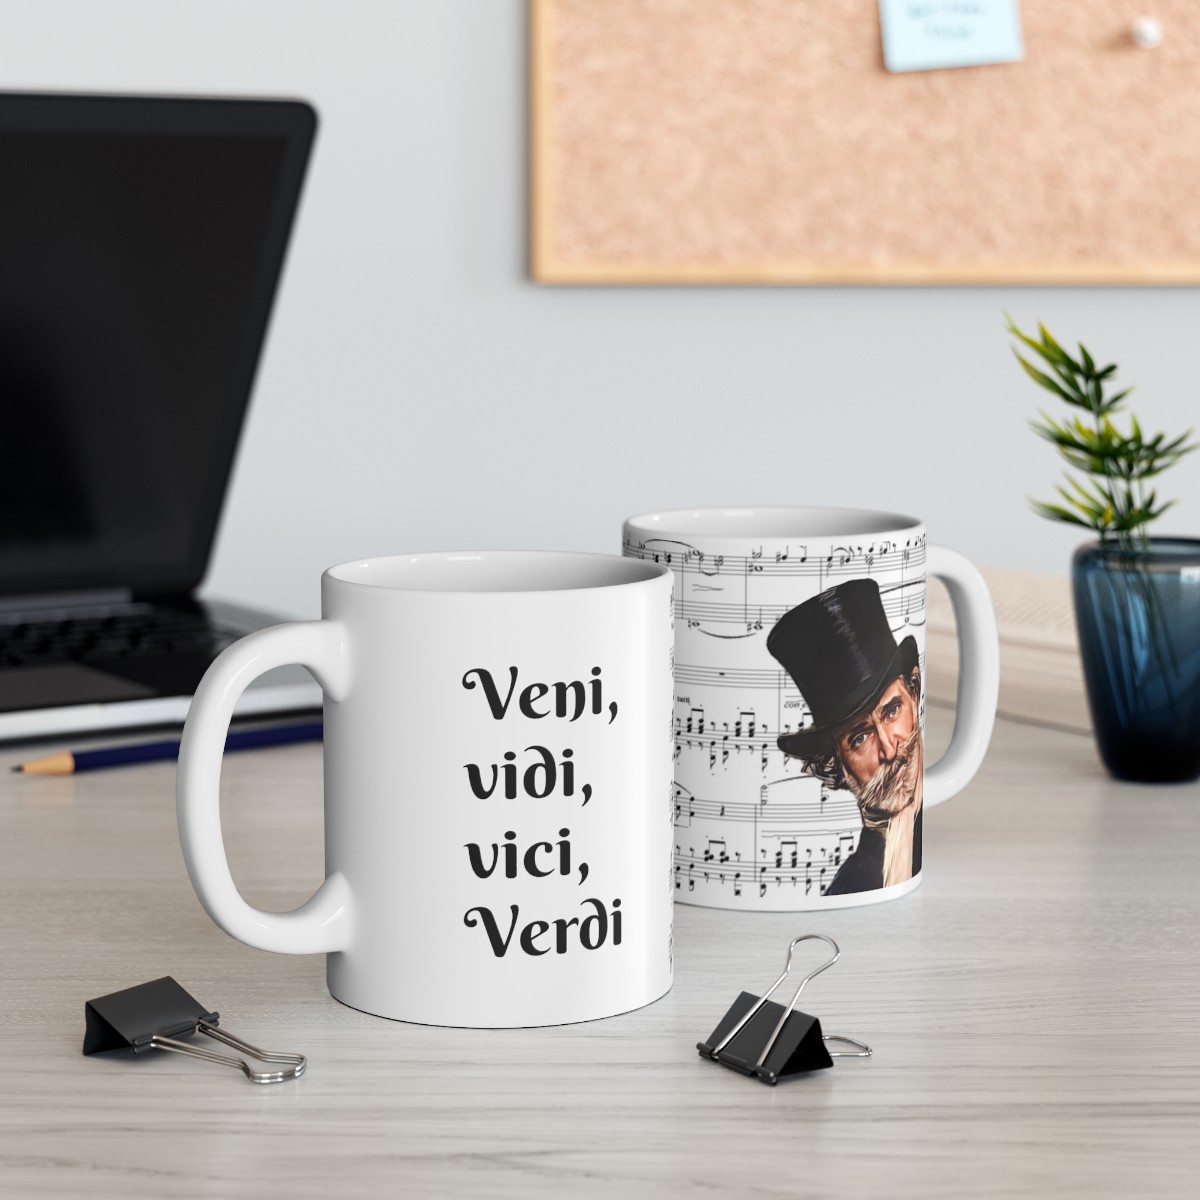 "Veni, vidi, vici, Verdi" Verdi Sheet Music Ceramic Mug 11oz product main image